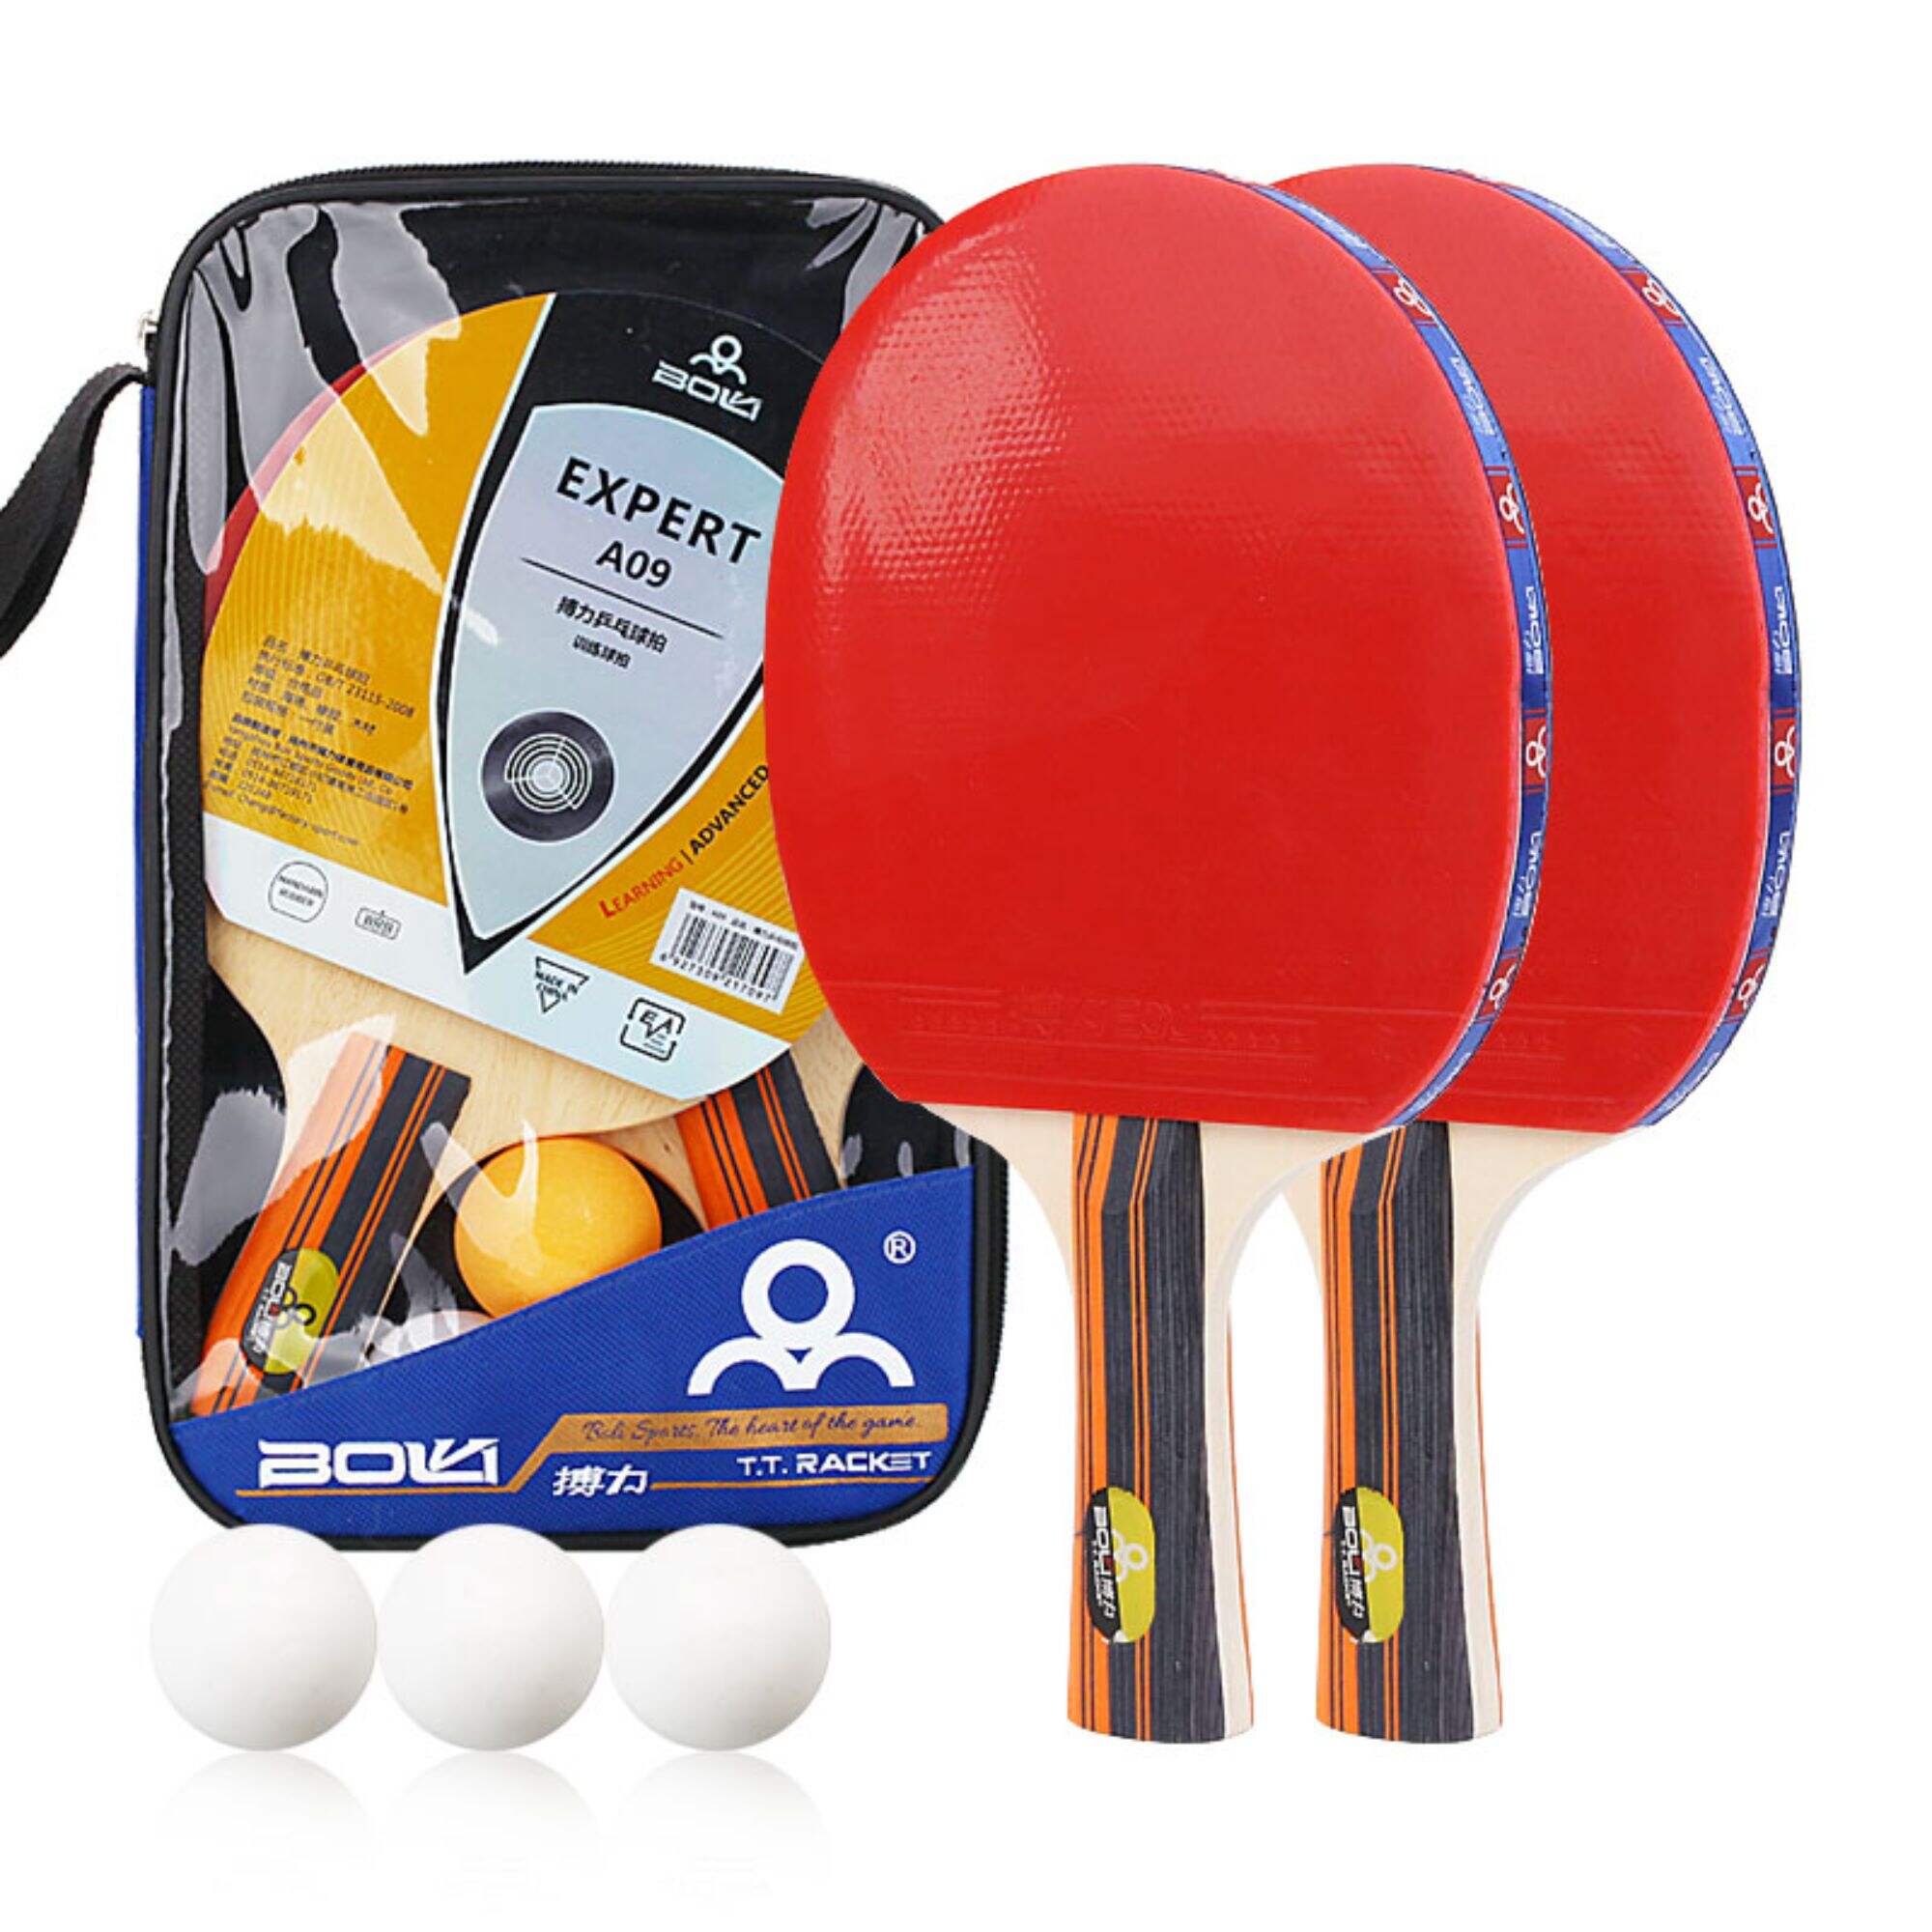 A09 Boli Promotional Table Tennis Bats Racket Set